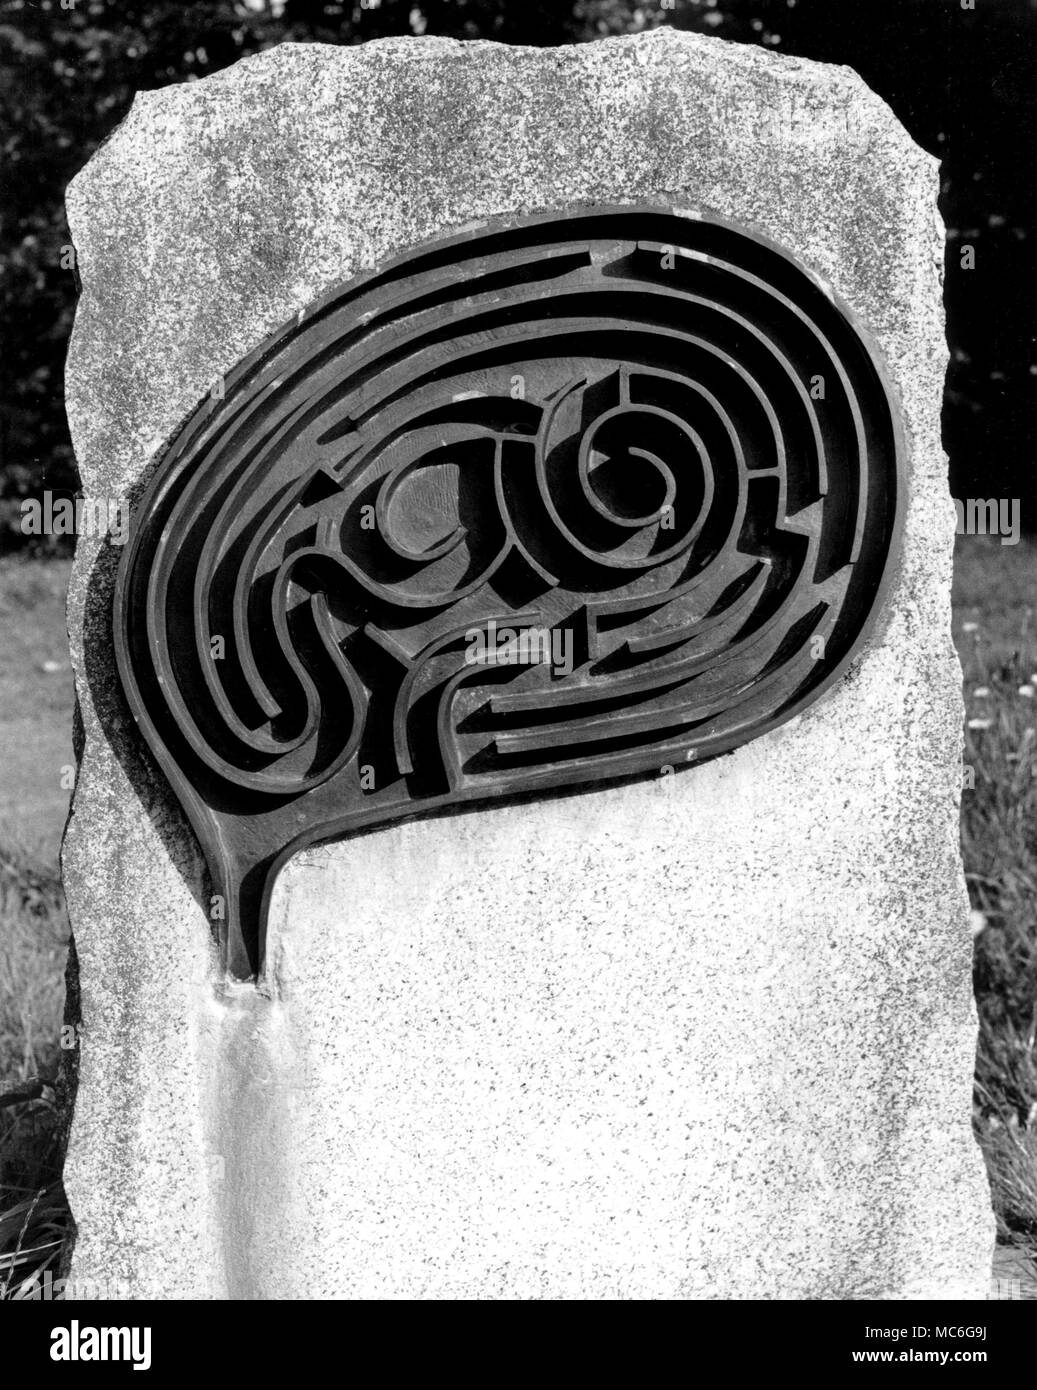 Labirinti - HADSTOCK fotografia del labirinto sulla lastra tombale dell'artista, Michael Aryton (morto nel 1975), nella sepoltura g turni di St Botolph's Church, Hadstock. Questo labirinto, con pareti rialzate, è costruita in rame. Esso design ricorda Aryton di interesse per la storia di Daedalus, l'artigiano ateniese che si suppone di avere progettato il labirinto di Creta, in cui il terribile uomo-bull (il minotauro) era stato imprigionato. Daedalus è famosa per le ali ha costruito da piume e cera, per consentire a lui e suo figlio Icarus per sfuggire l'isola di Creta. Poiché il Aryton maze è design Foto Stock